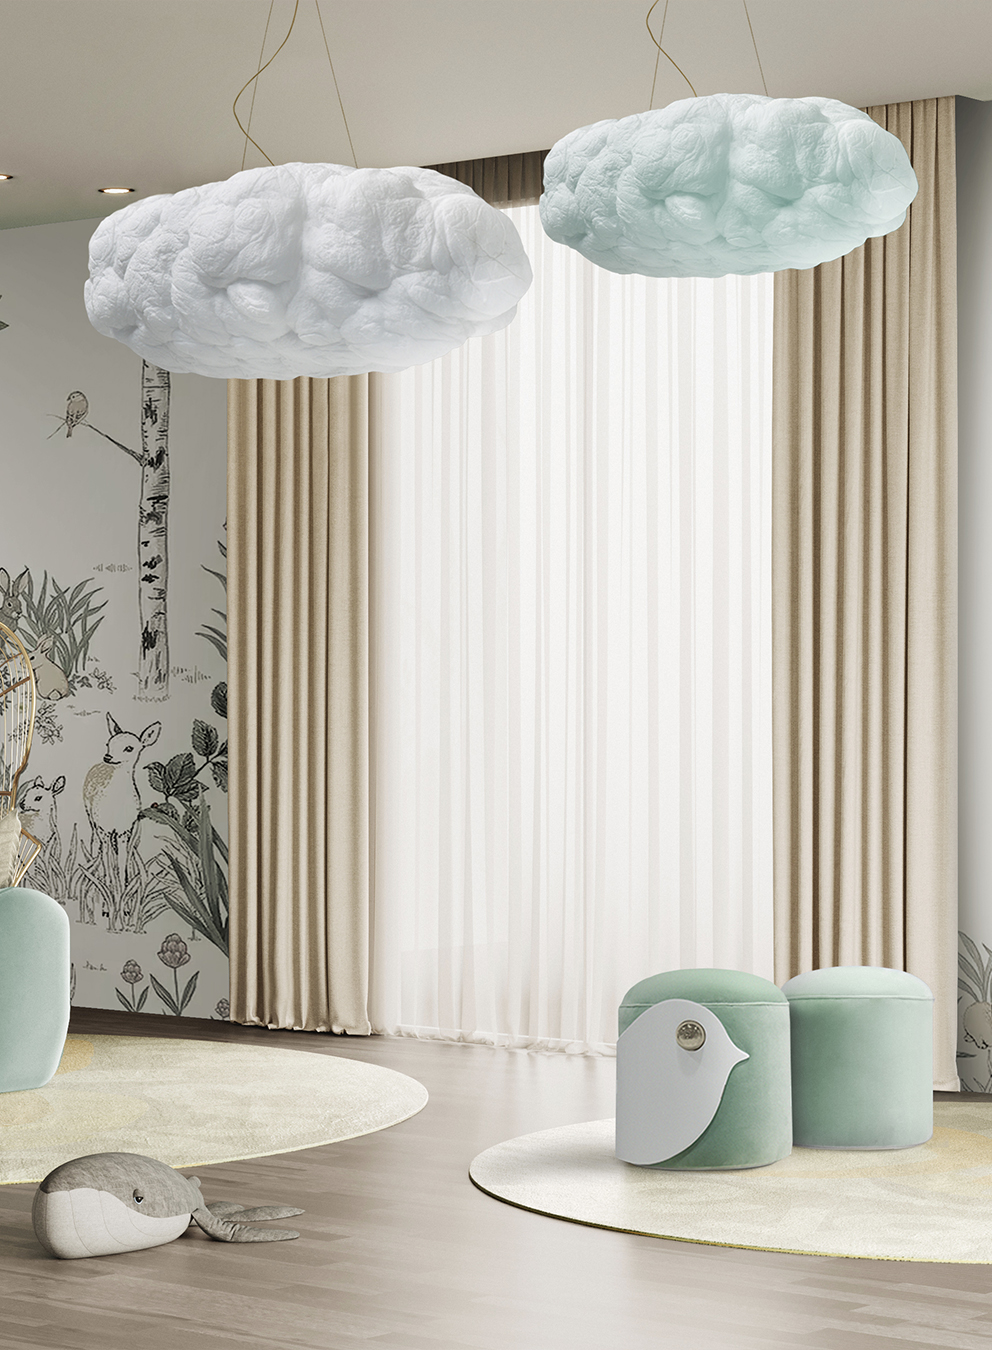 cloud lamp circu magical furniture